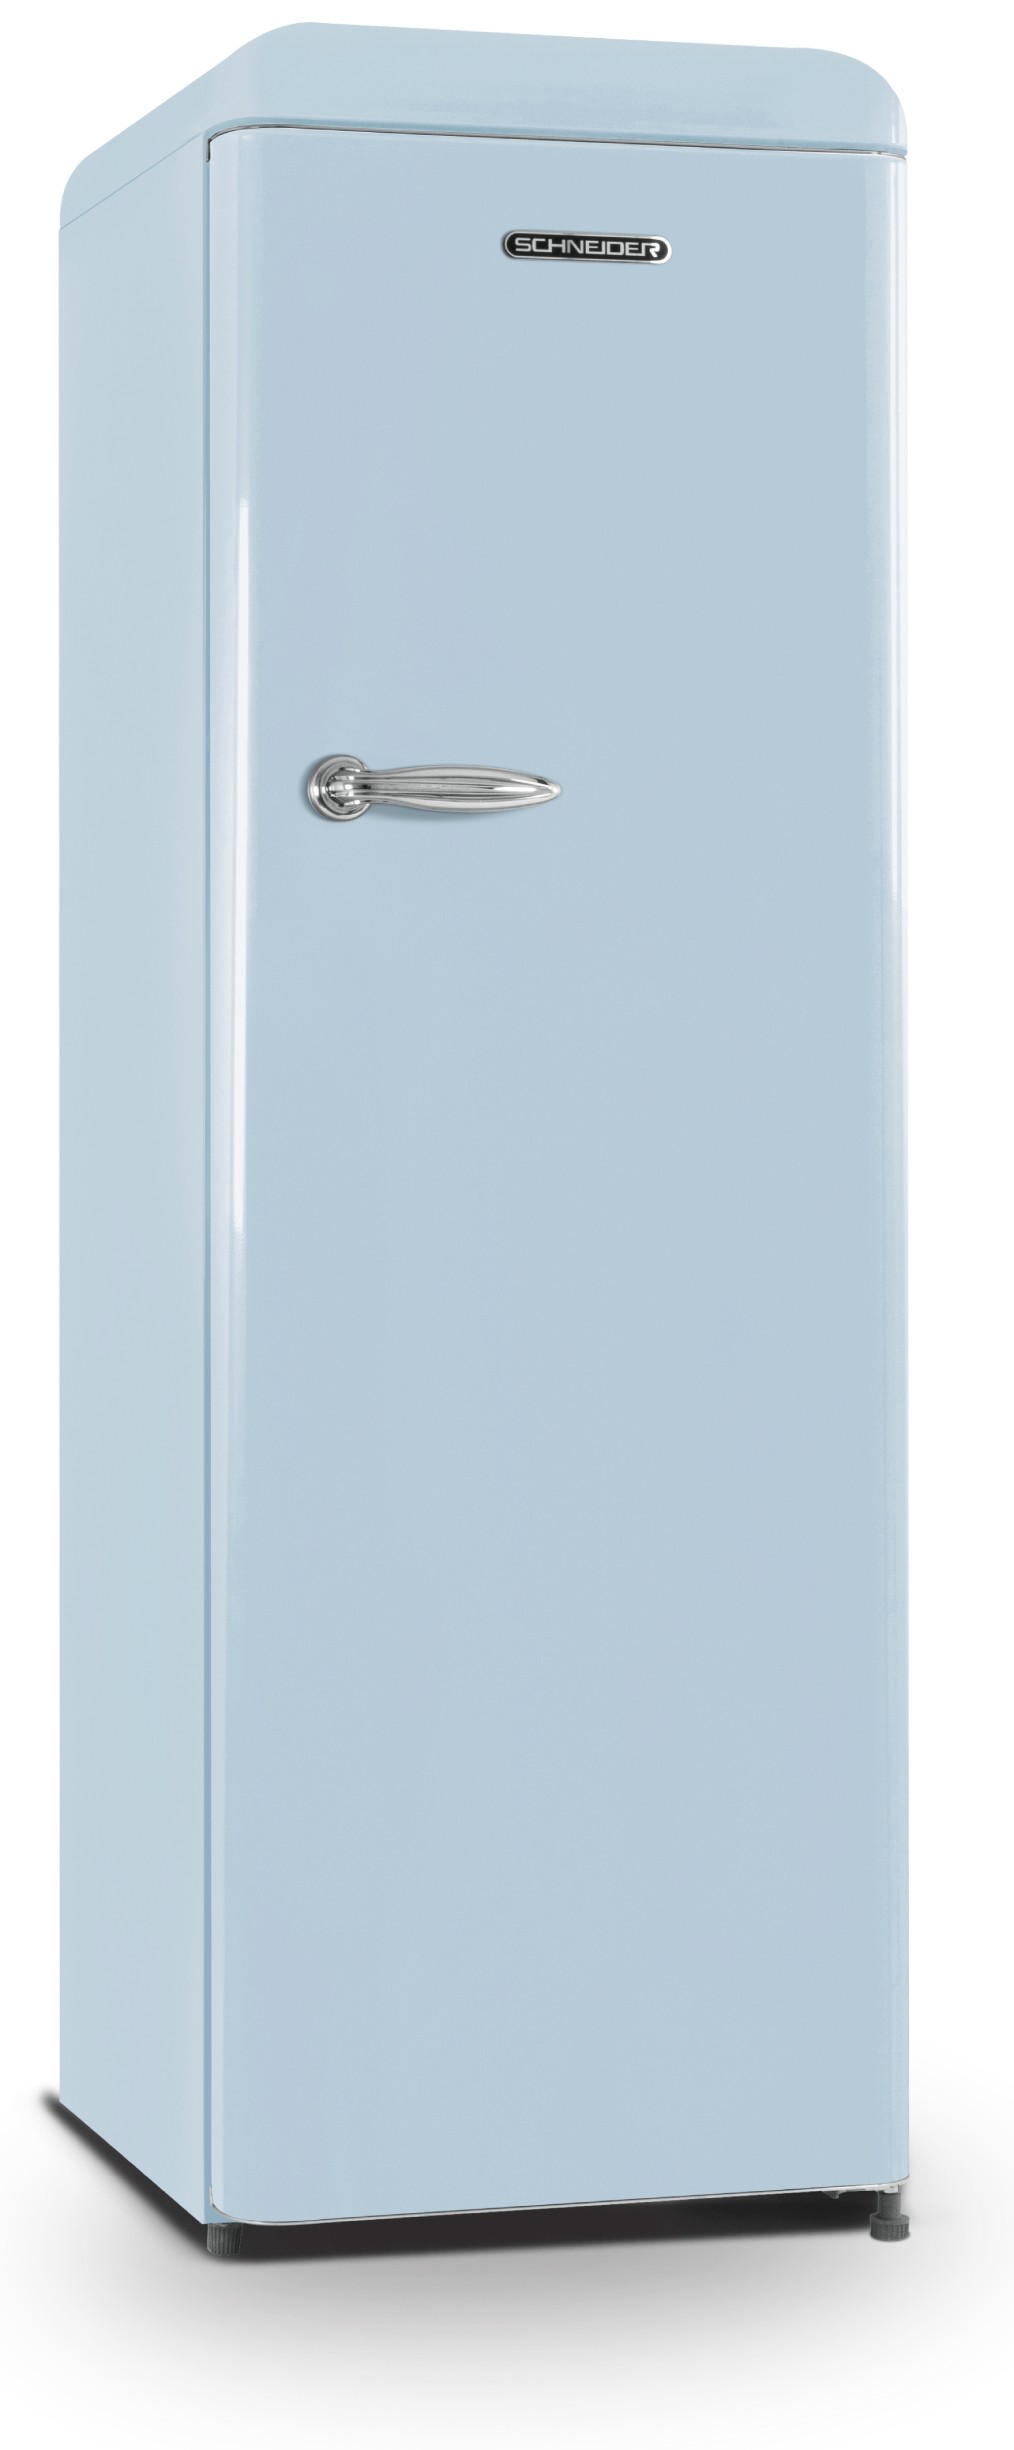 SCHNEIDER Réfrigérateur 1 porte Vintage 337 L Bleu - SCCL329VBL